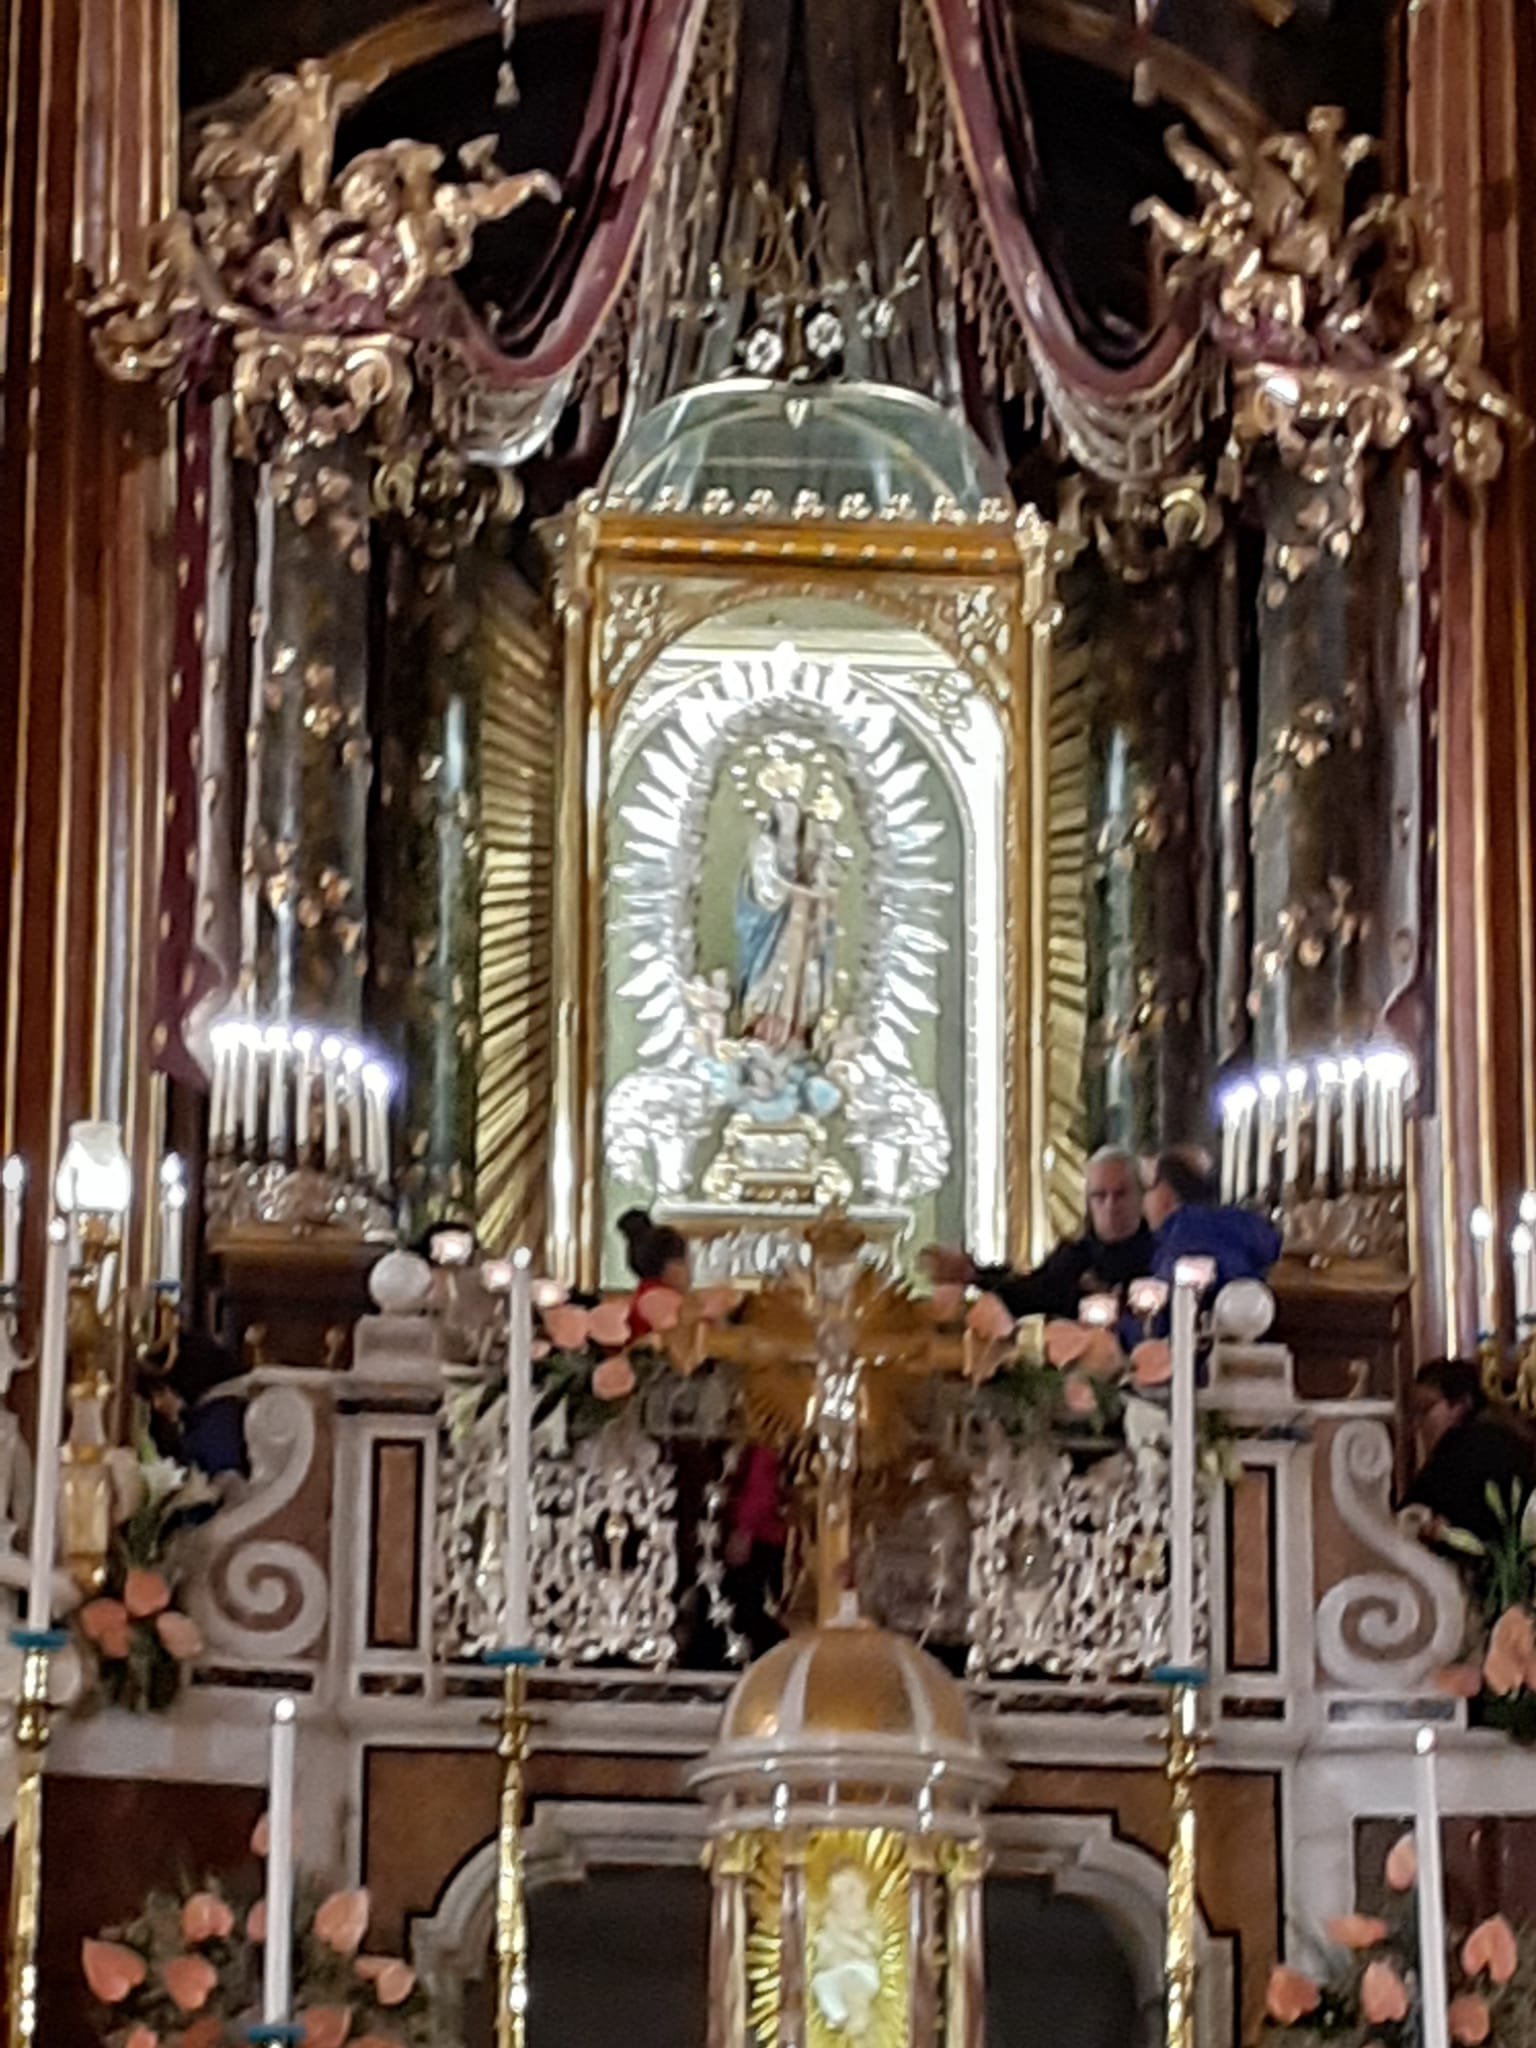 Sabato privilegiato, 4 gennaio 2020. Basilica del Ges Vecchio, Napoli